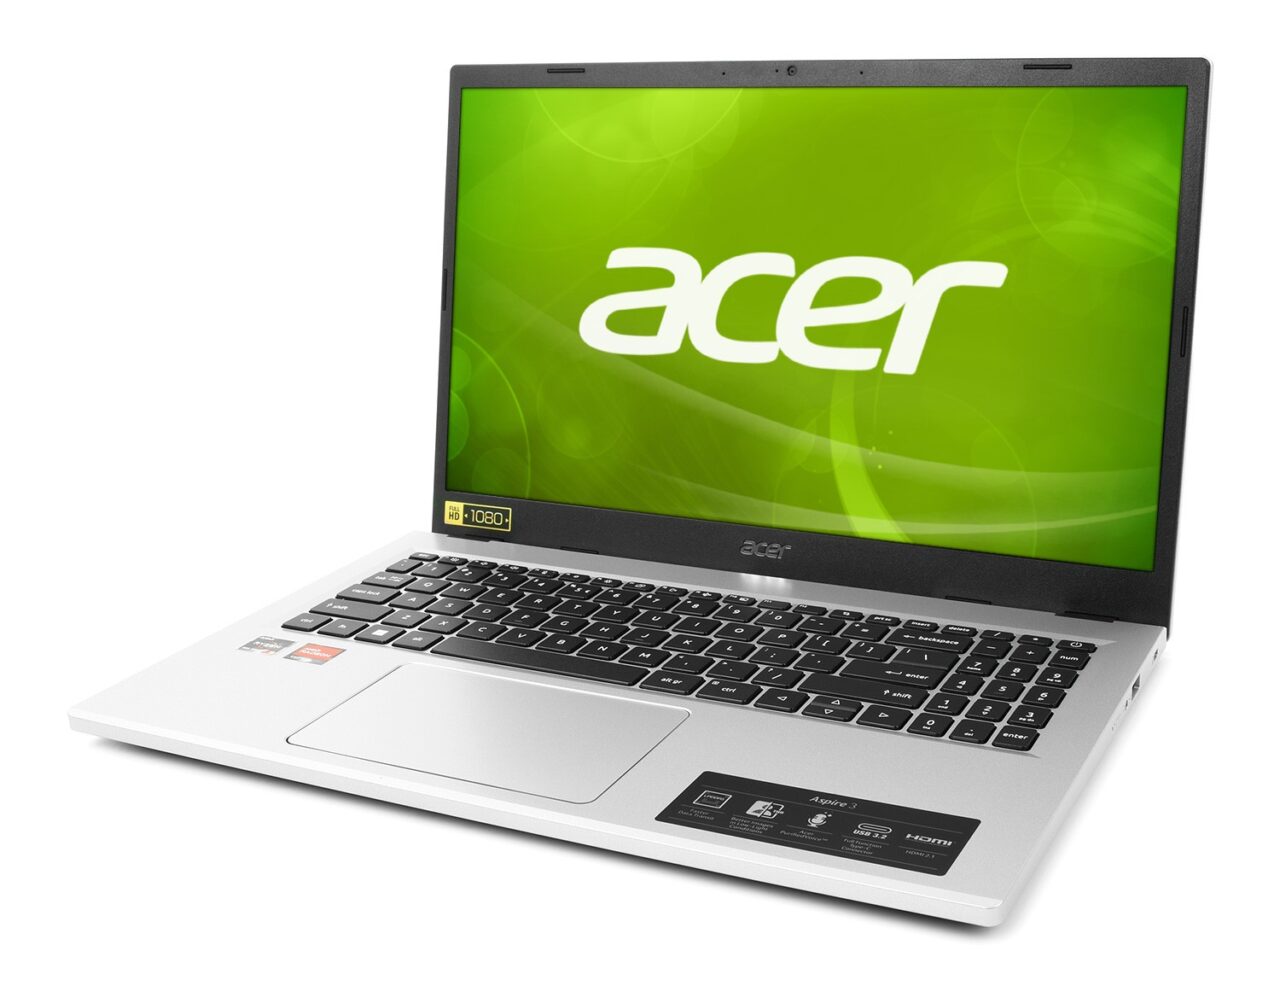 Laptop marki Acer z otwartą pokrywą i włączonym ekranem pokazującym logo firmy na zielonym tle w wysokiej rozdzielczości.